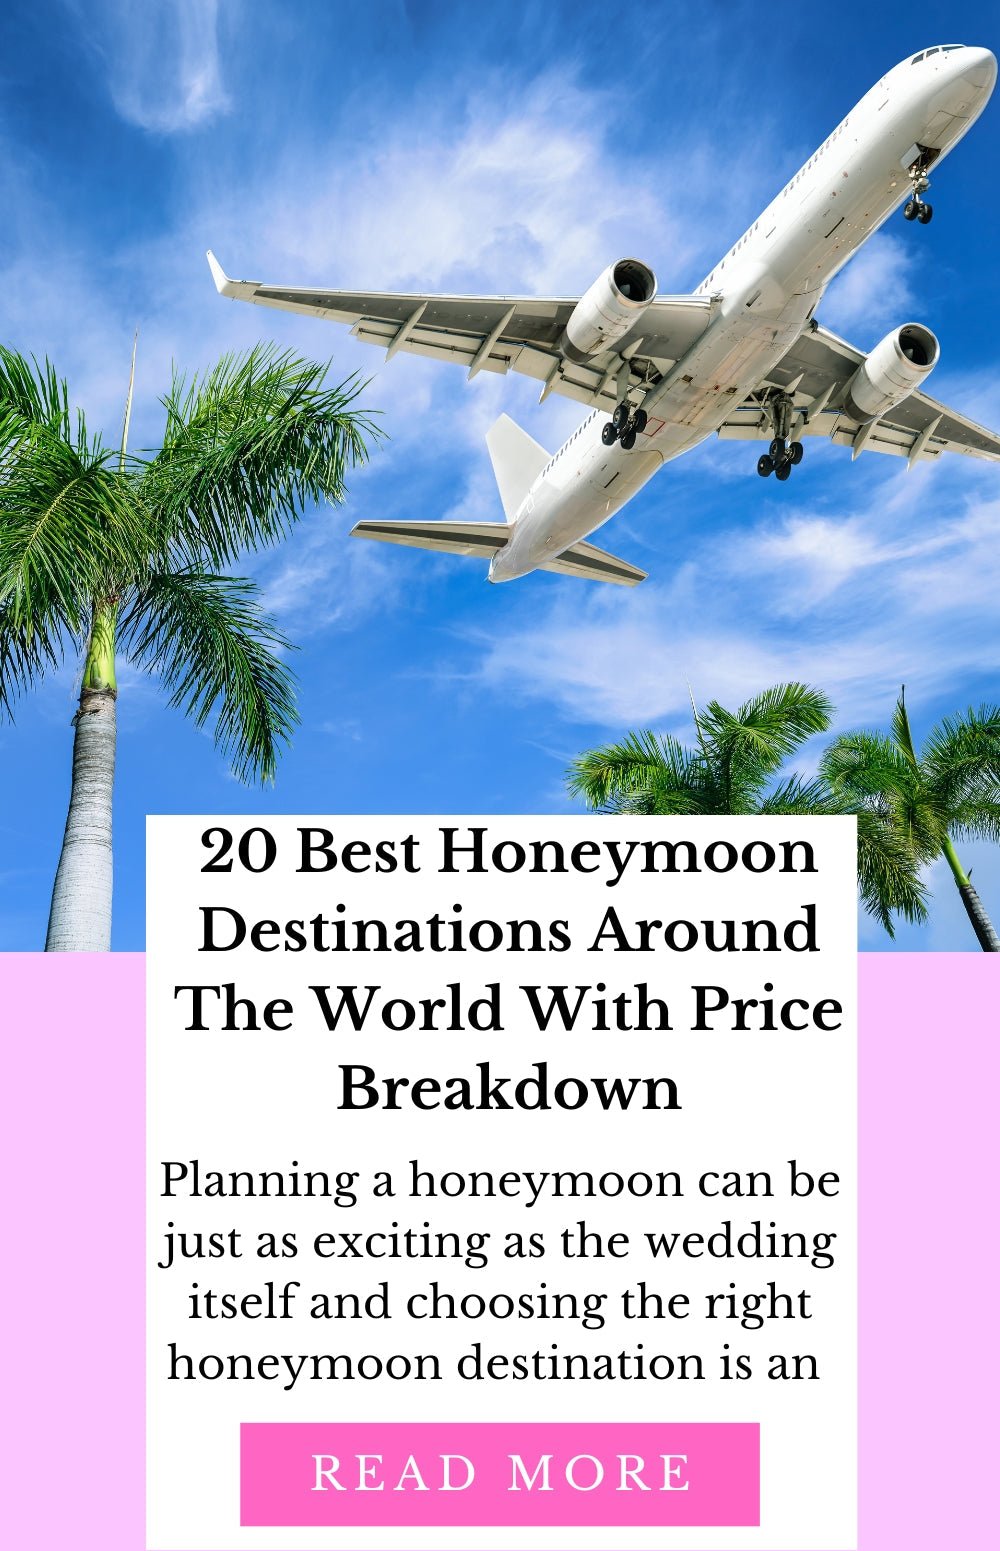 20 Best Honeymoon Destinations Around The World With Price Breakdown - TGC Boutique